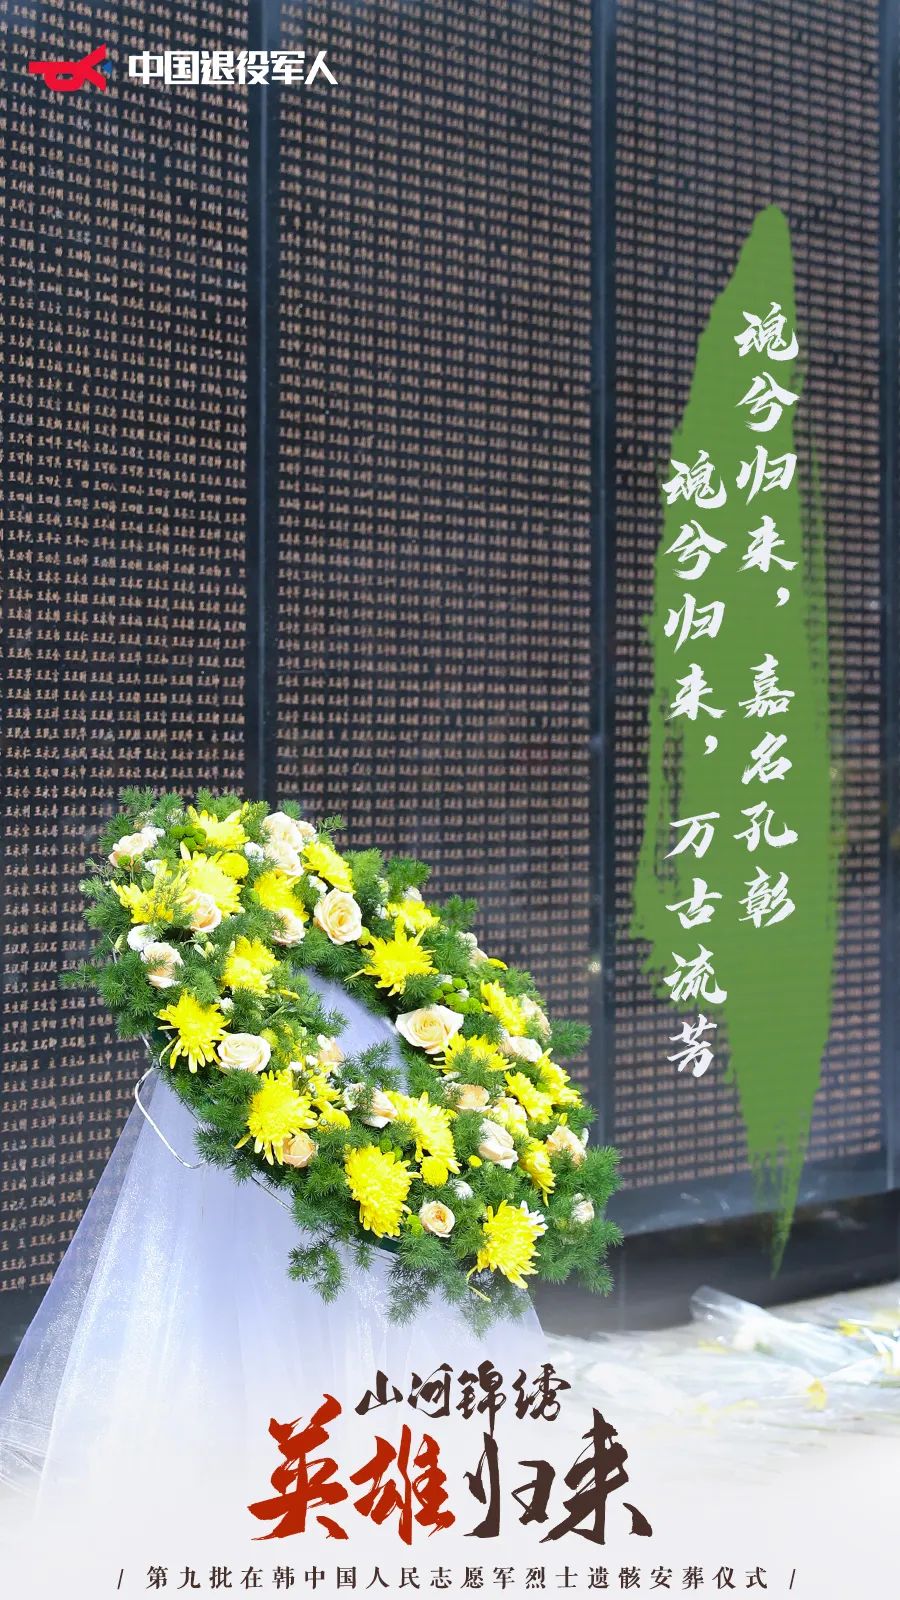 裴金佳致第九批在韩志愿军烈士遗骸安葬祭文